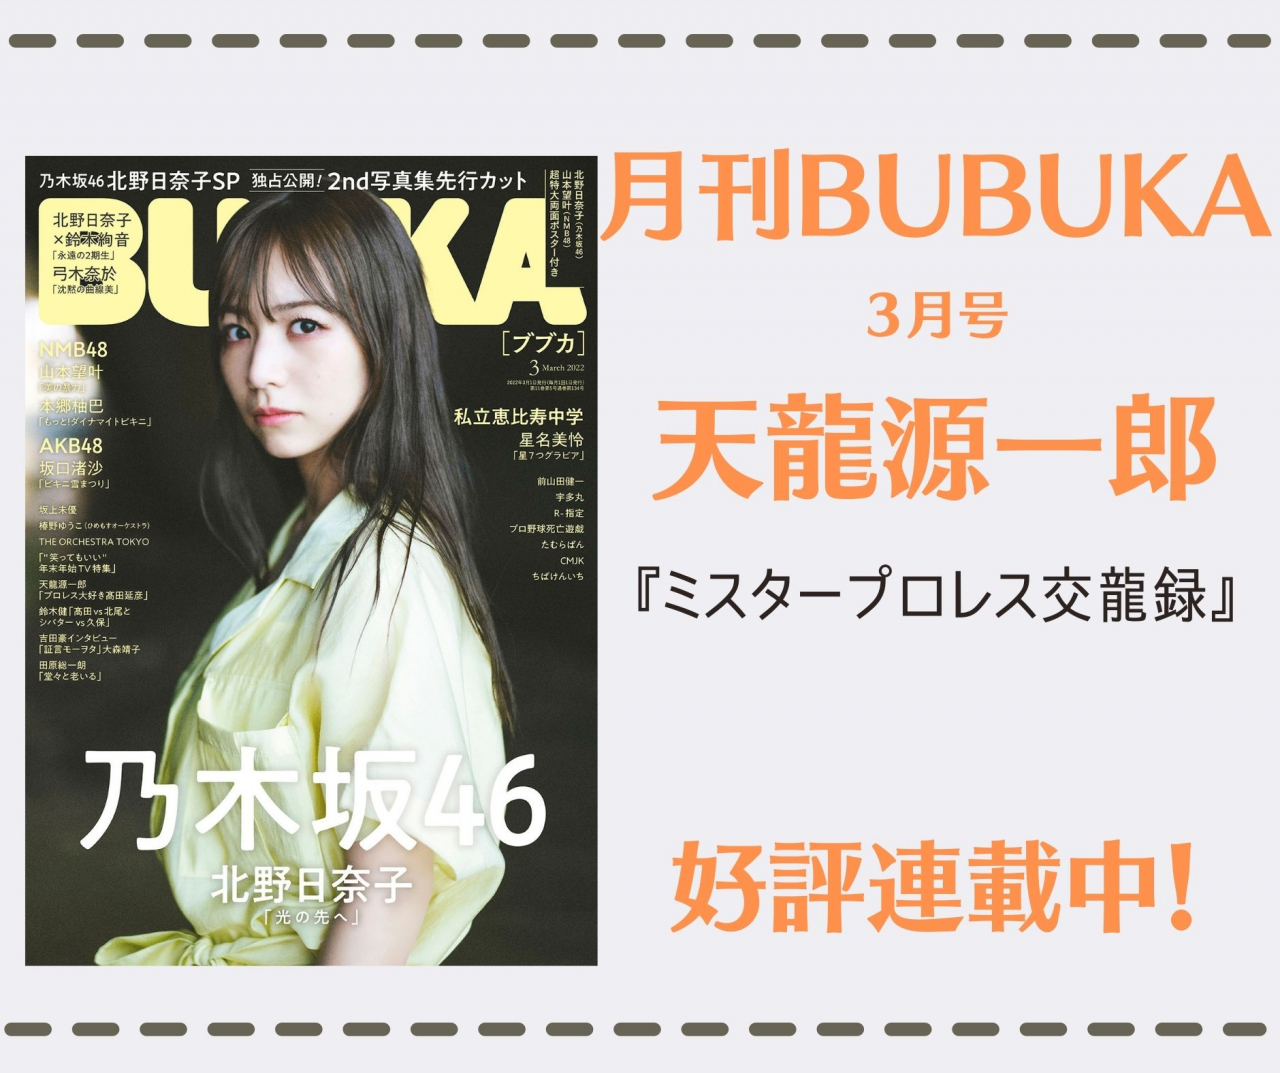 【連載情報】BUBKA・ミスタープロレス交龍録
